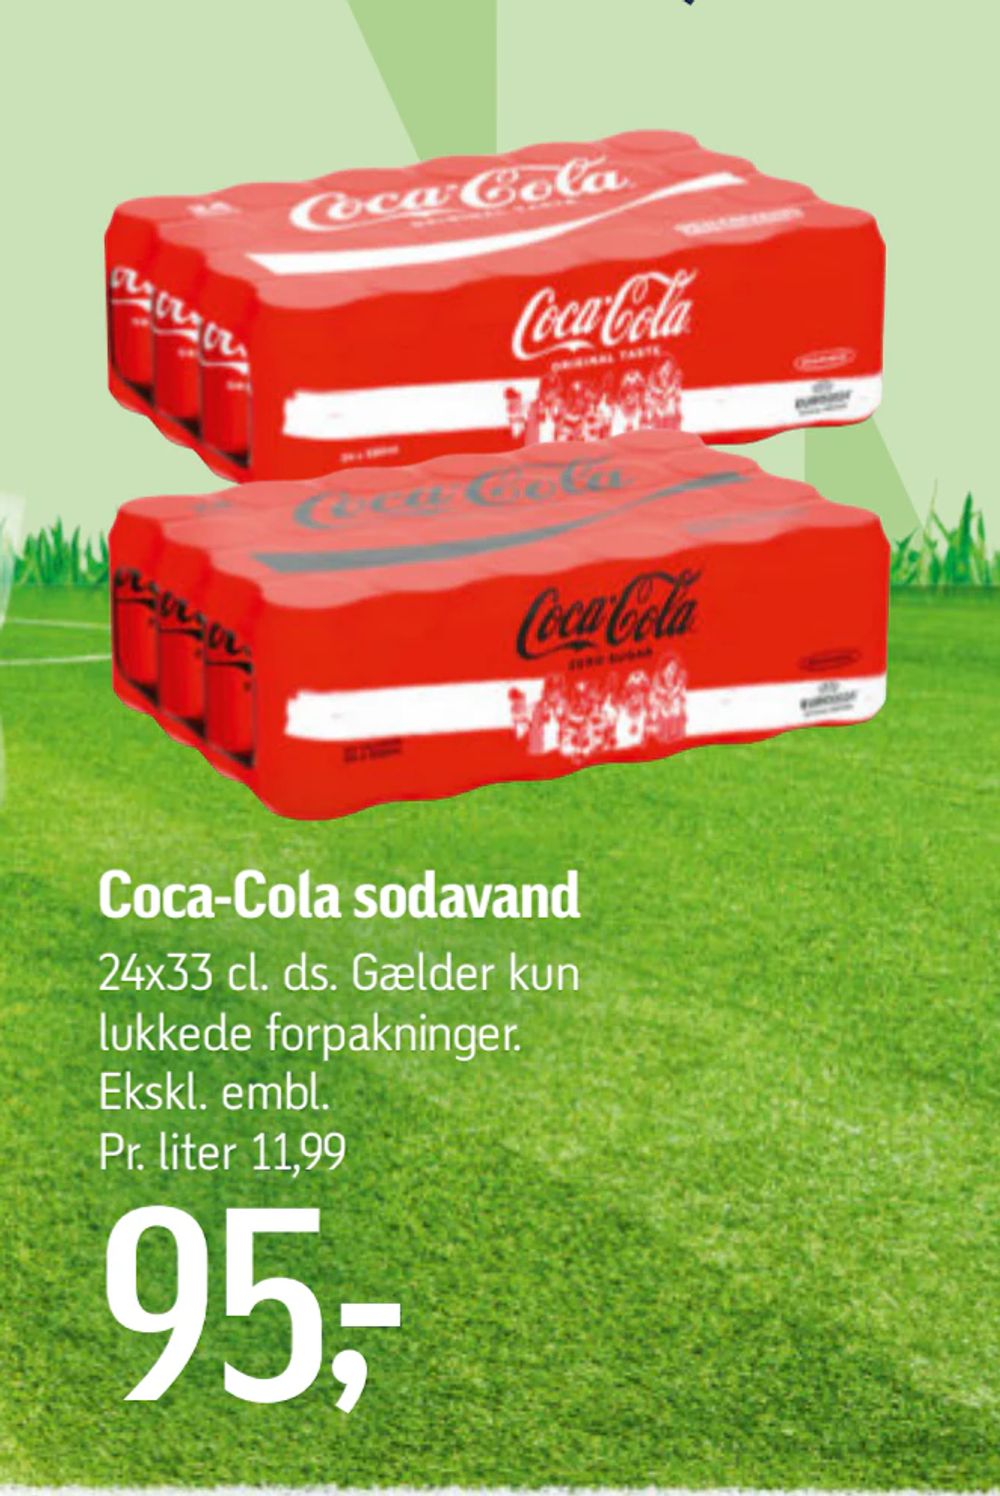 Tilbud på Coca-Cola sodavand fra føtex til 95 kr.